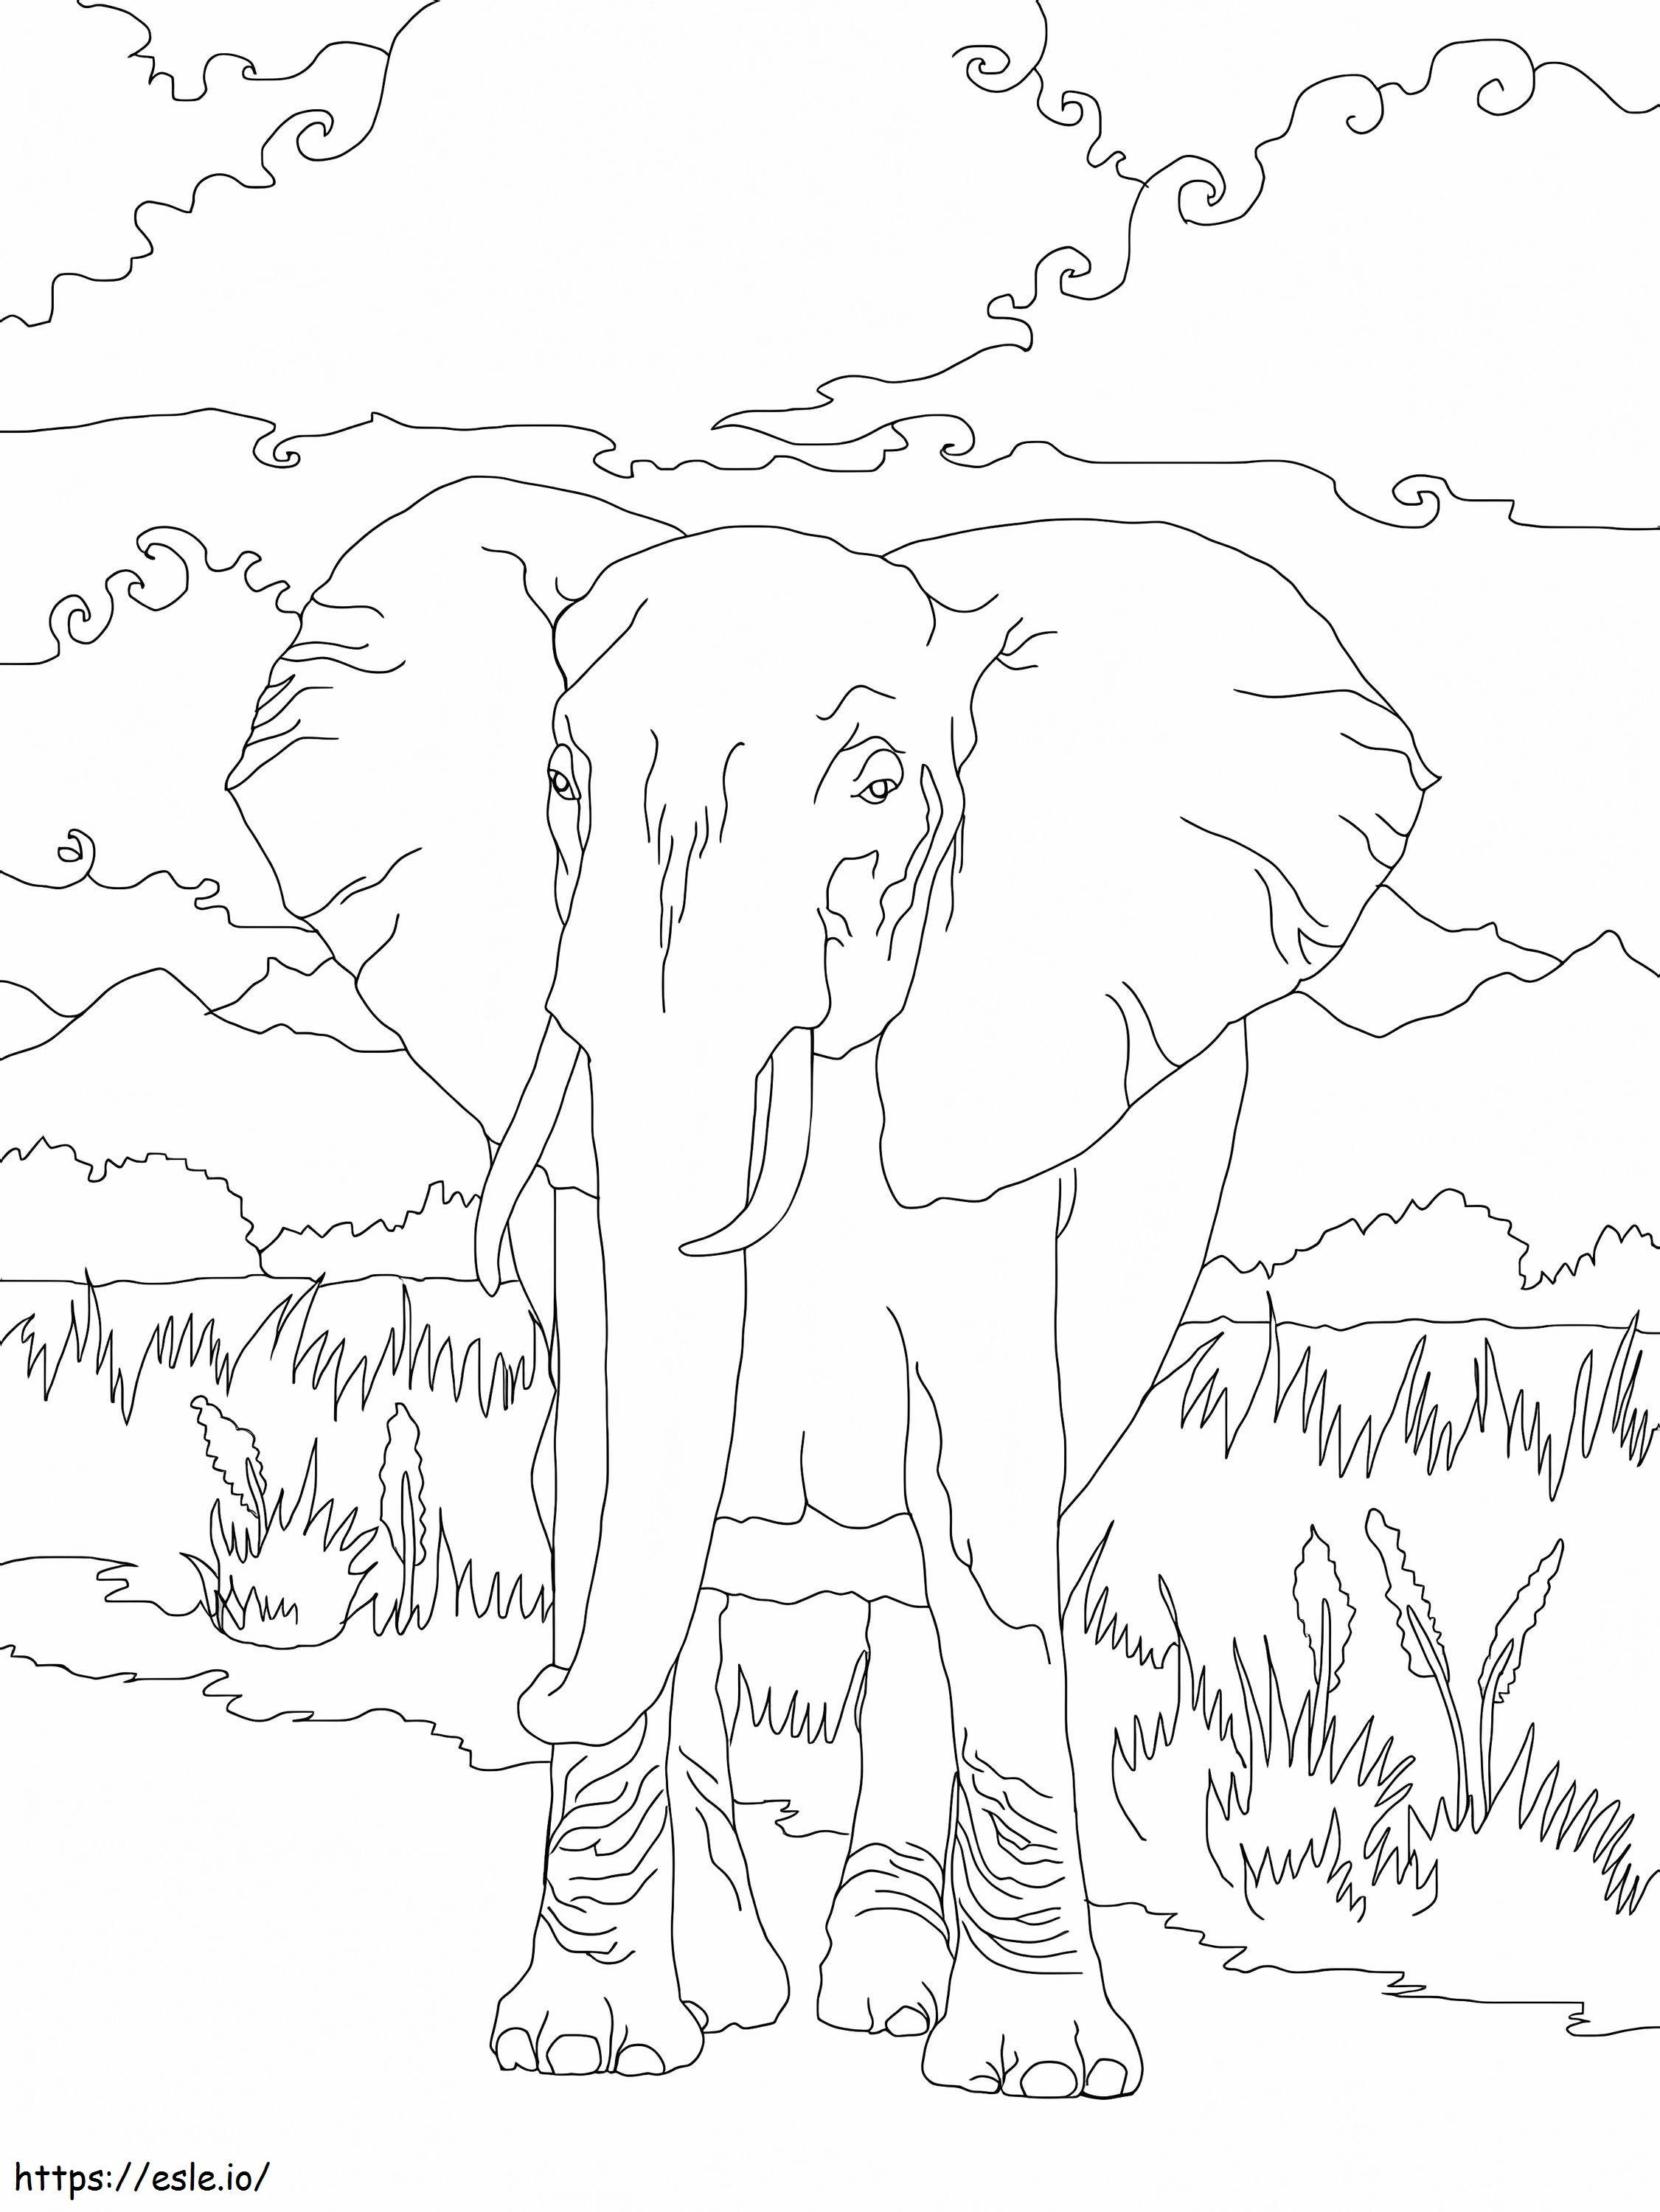 Elefante africano 1 para colorir